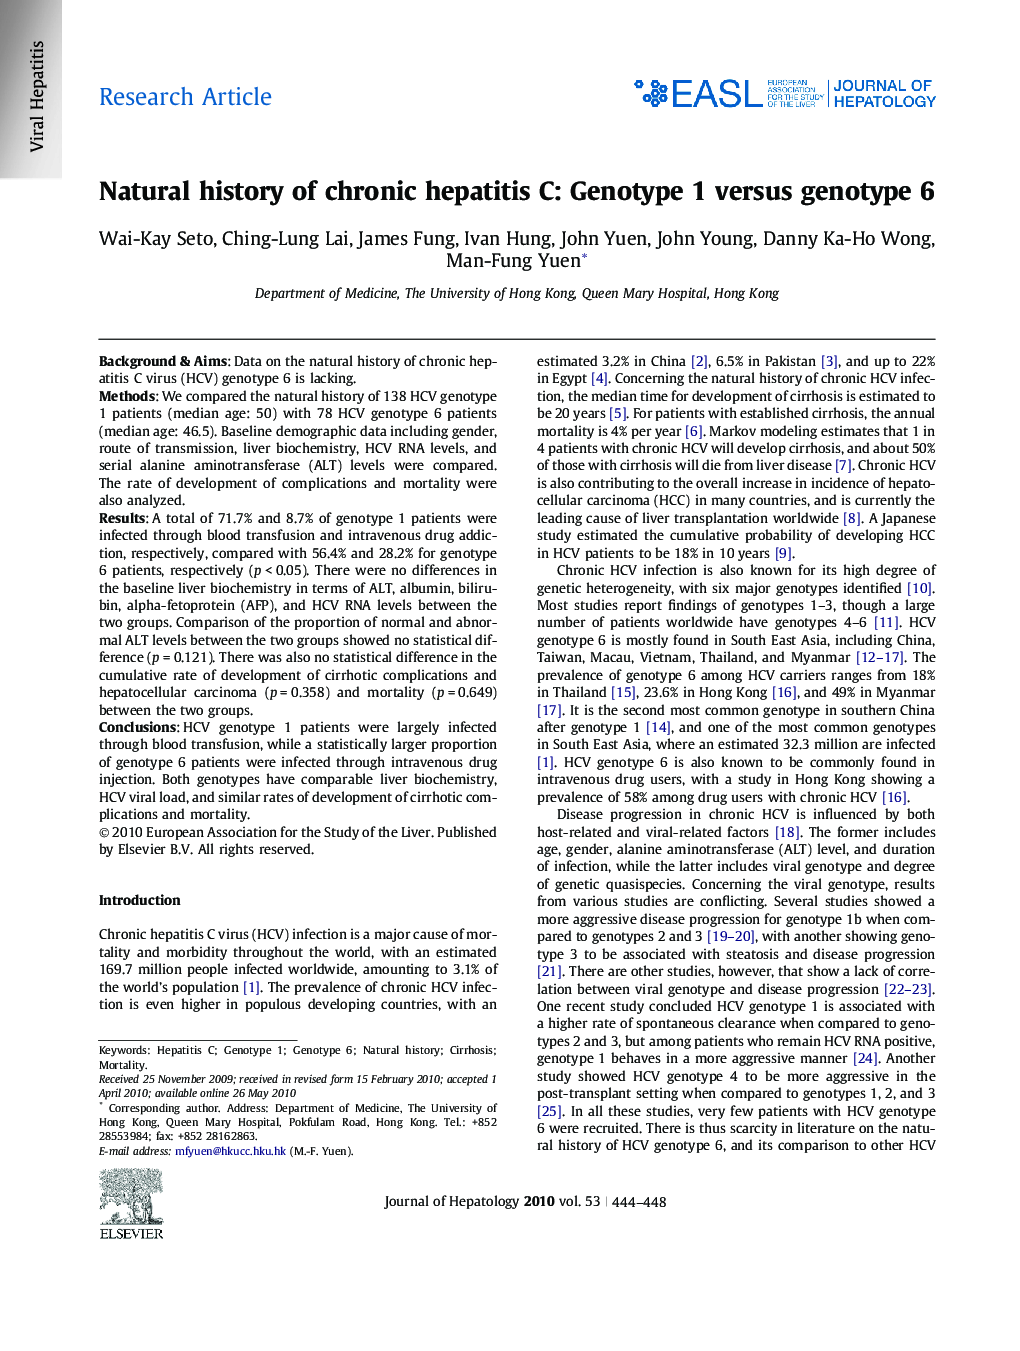 Research ArticleNatural history of chronic hepatitis C: Genotype 1 versus genotype 6